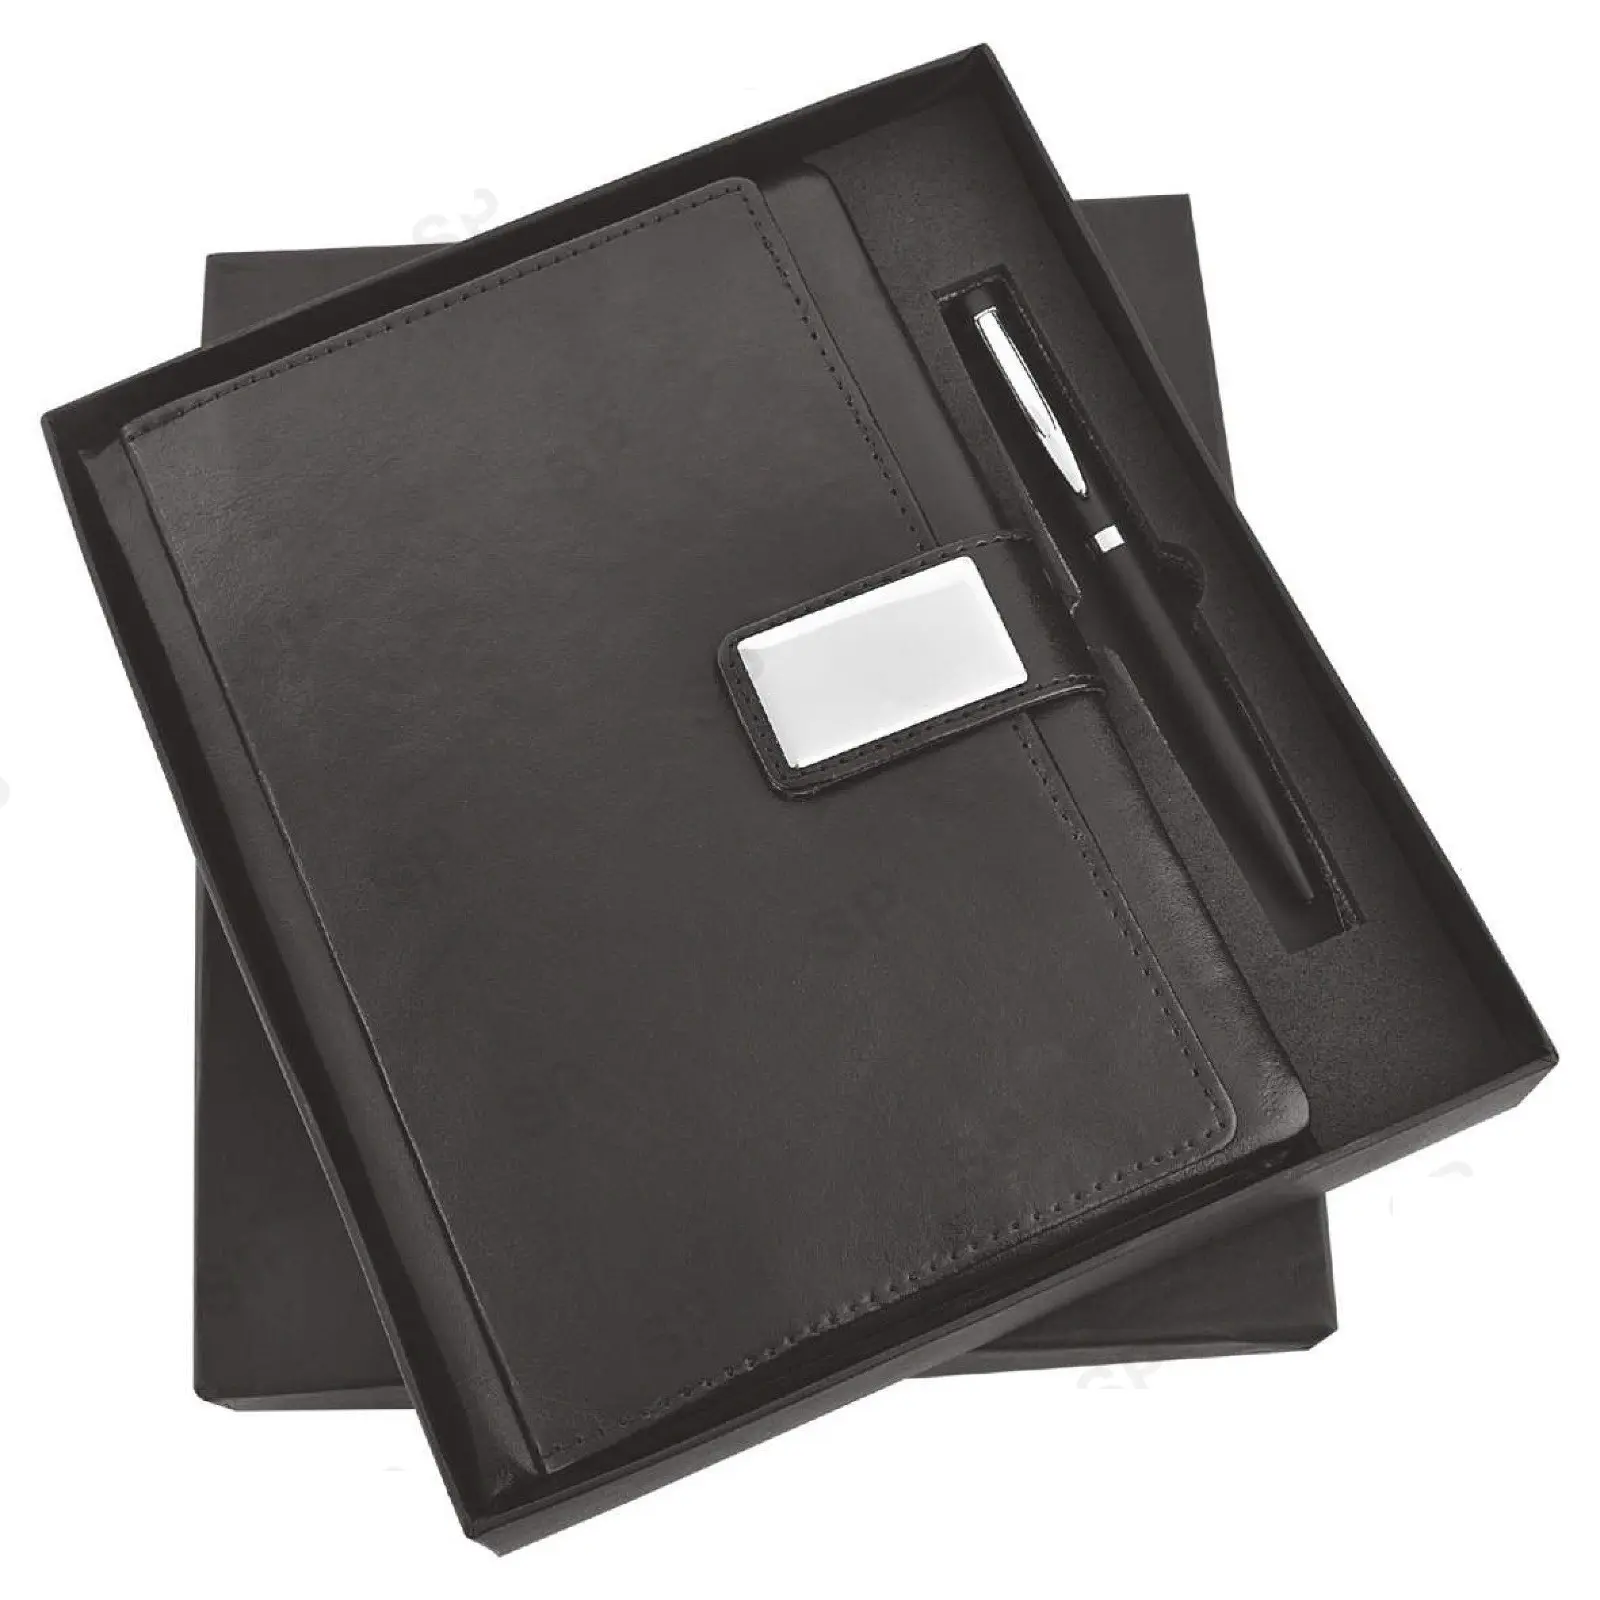 Hervorragende Qualität Beinhaltet ein Corporate-Geschenkset mit schwarzem Tagebuch und schwarzem Stift, das zum Export preis aus Indien erhältlich ist